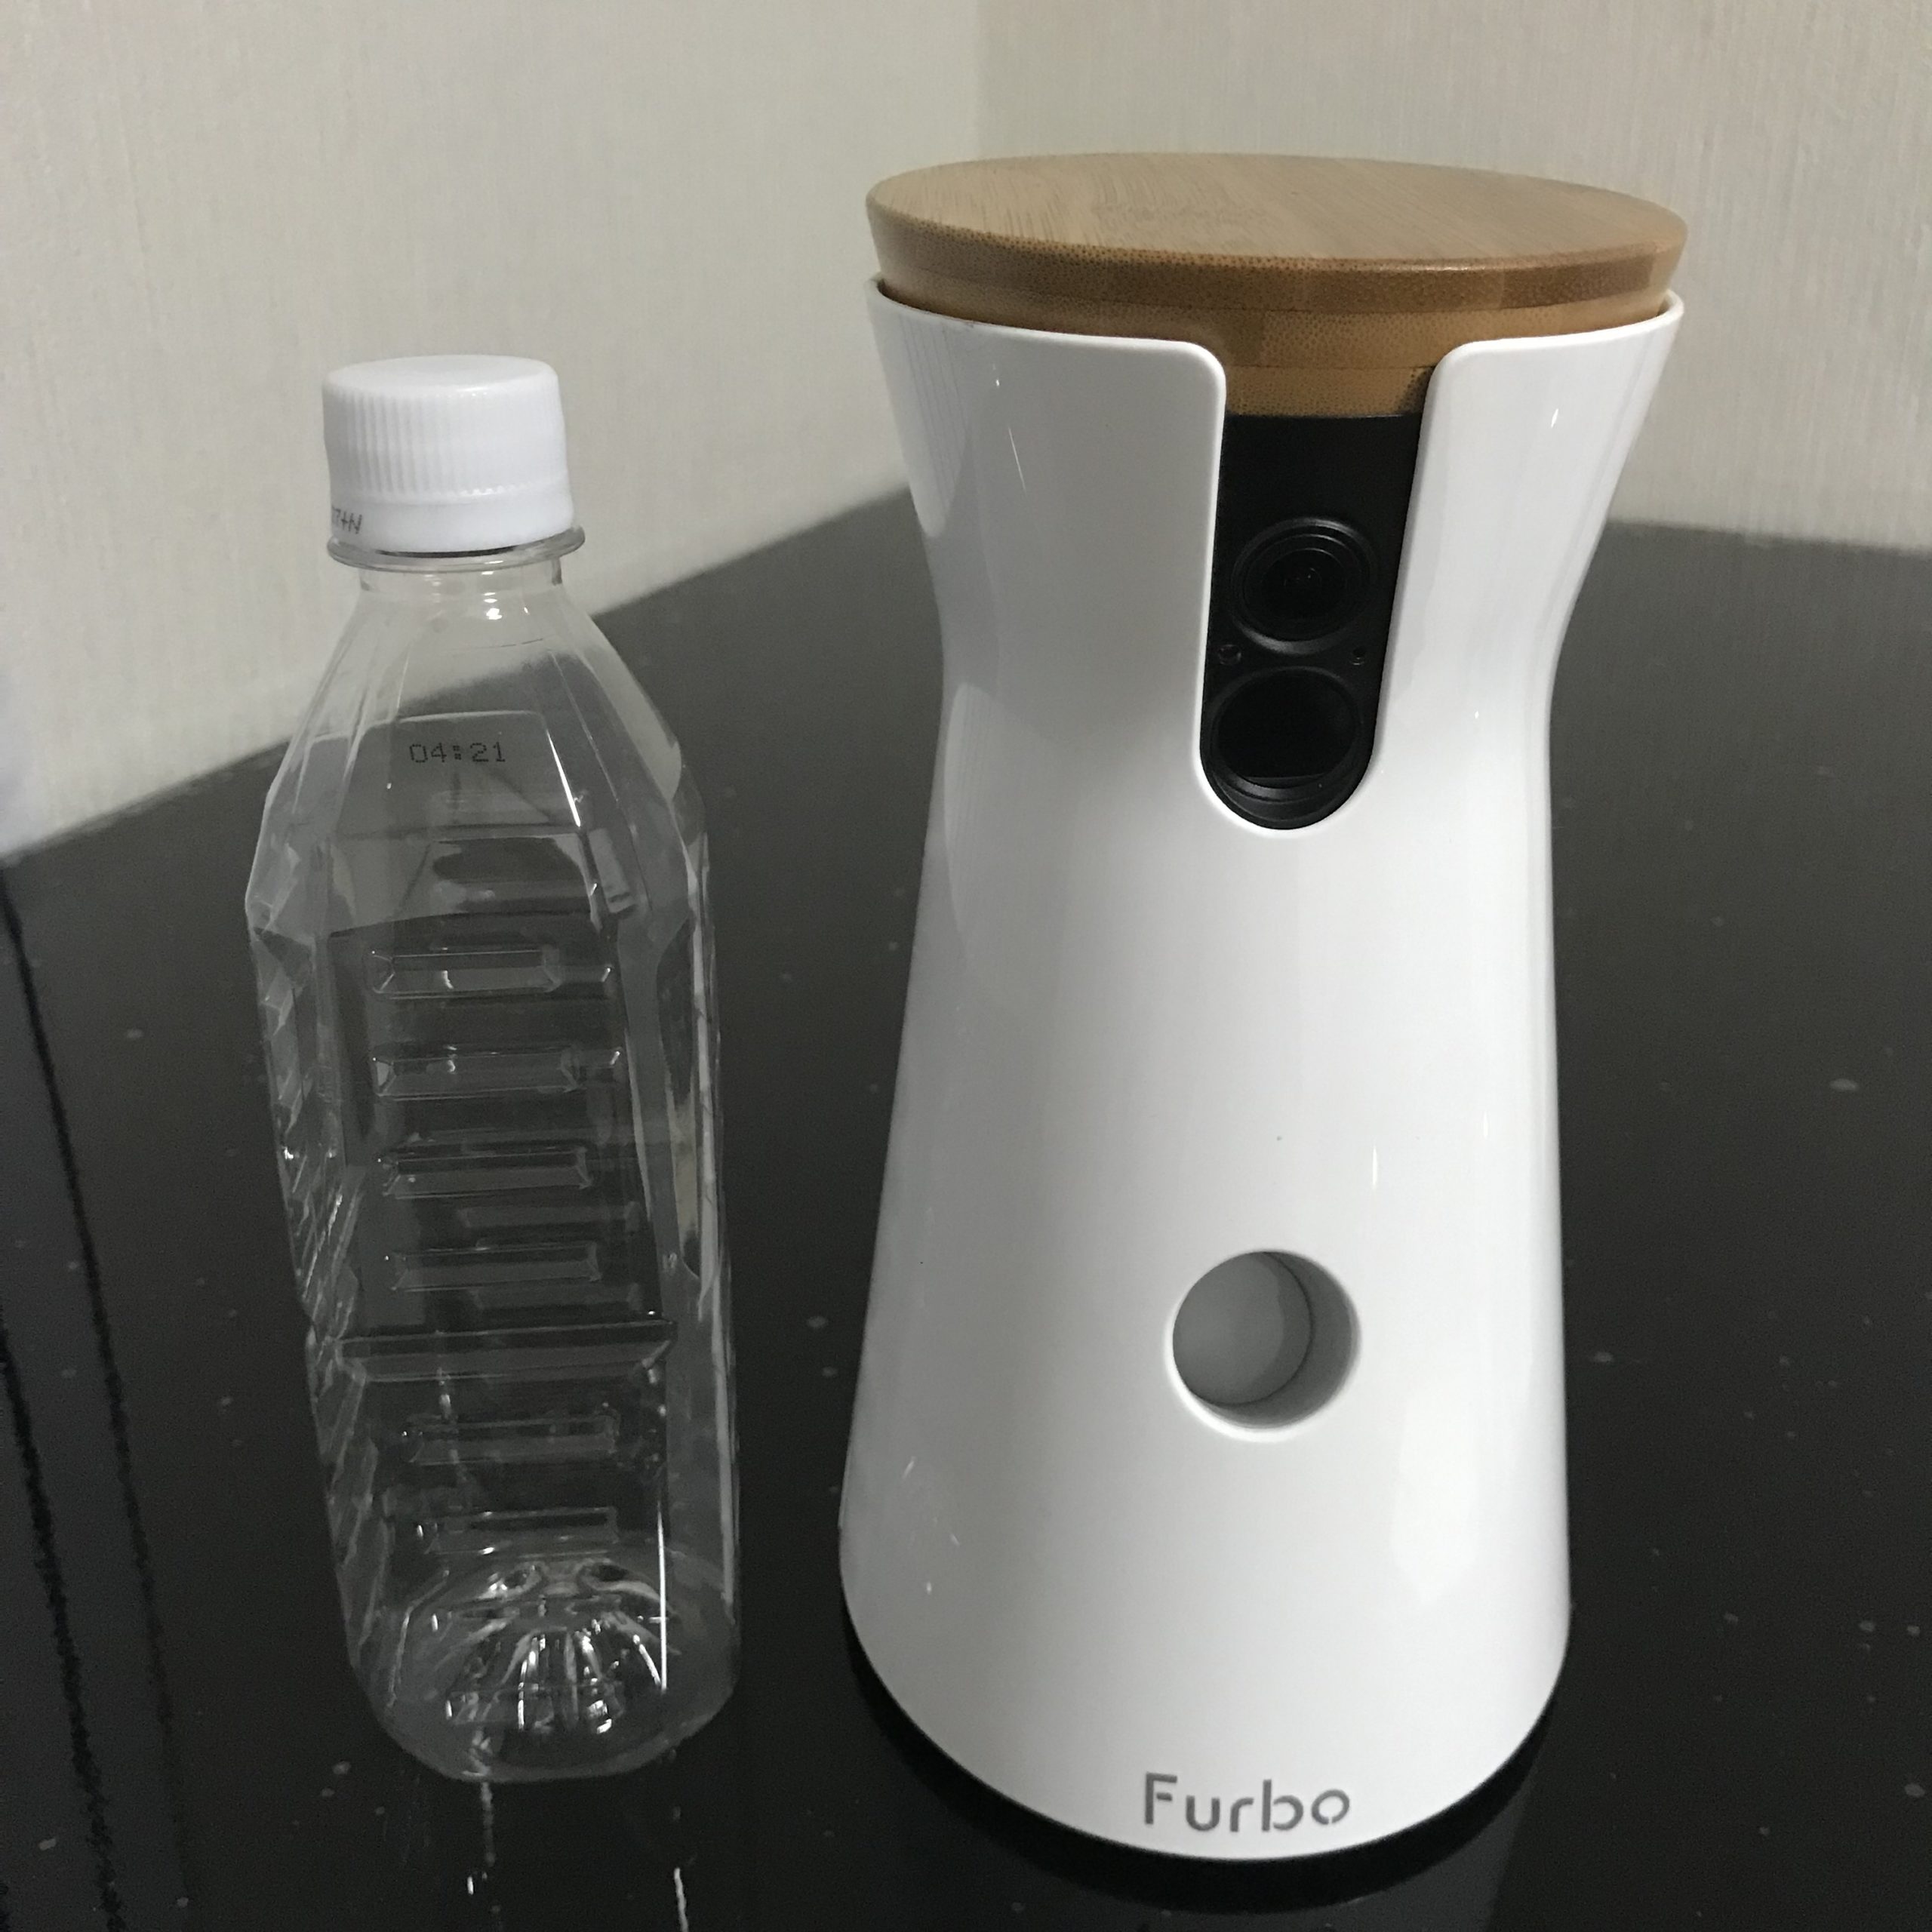 Furboとペットボトルの比較画像